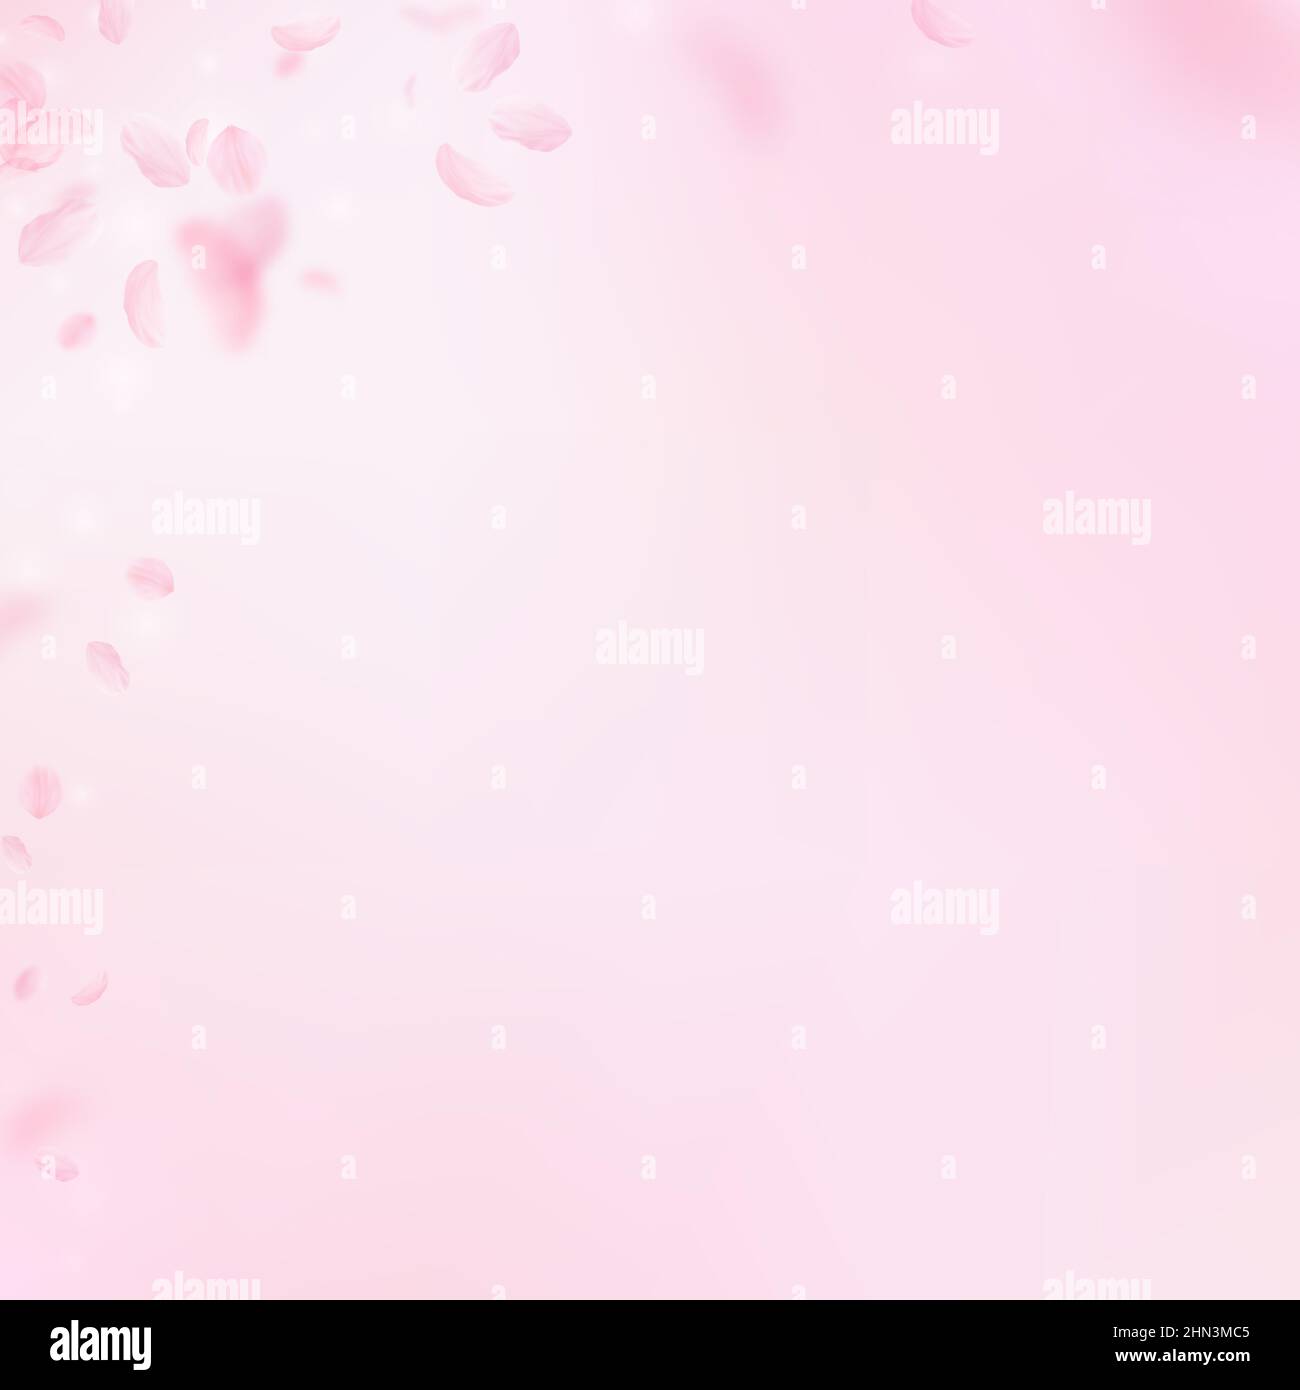 Với những bông hoa hồng trừu tượng này, bạn sẽ khám phá ra một thế giới mới về sắc thái màu hồng đầy sáng tạo và độc đáo. Hãy chuẩn bị để bị choáng ngợp và ấn tượng khi thưởng thức chúng. (With these abstract pink flowers, you will discover a new world of creative and unique shades of pink. Get ready to be overwhelmed and impressed when enjoying them.)